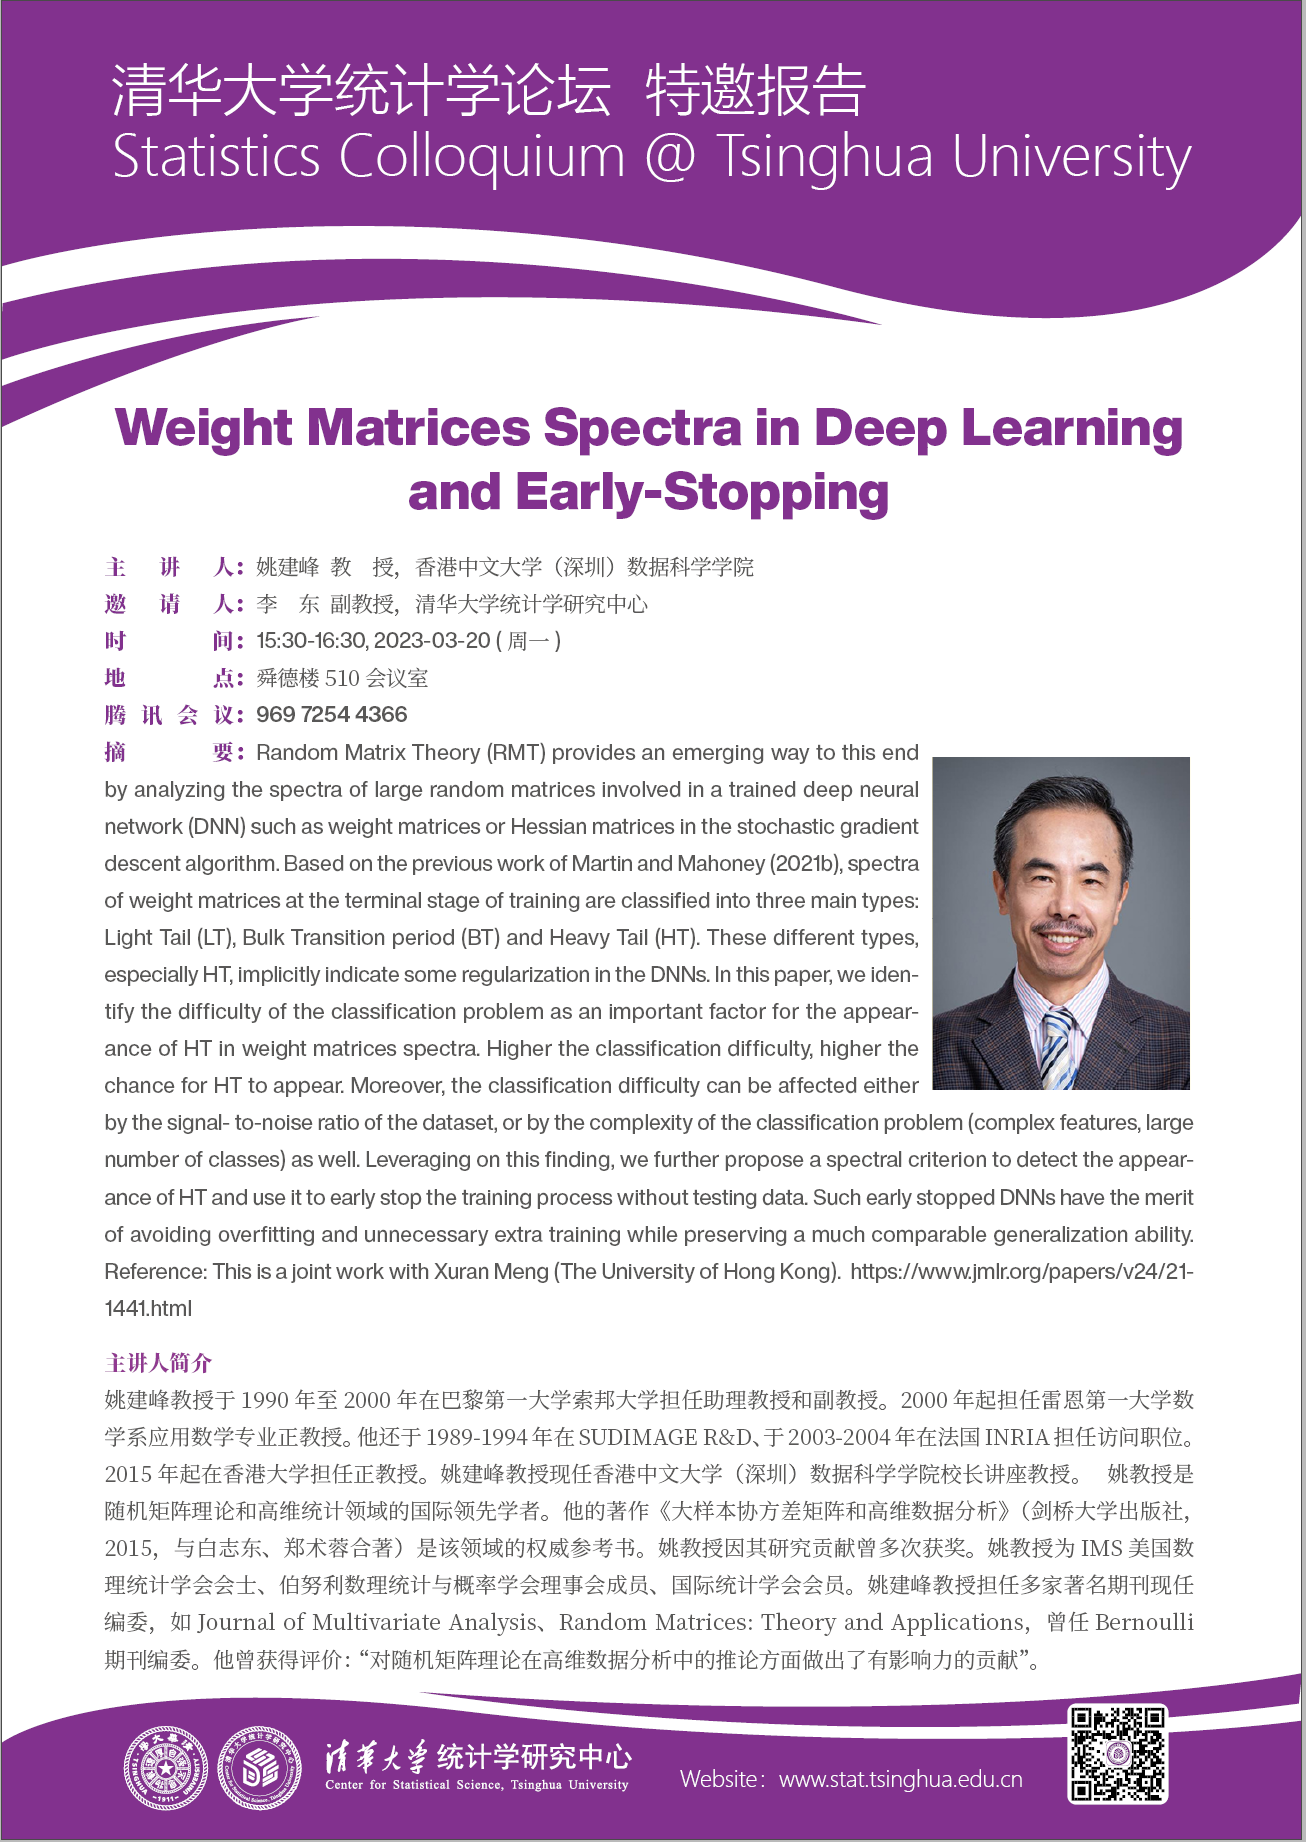 【统计学论坛】Weight Matrices Spectra in Deep Learning and Early-stopping